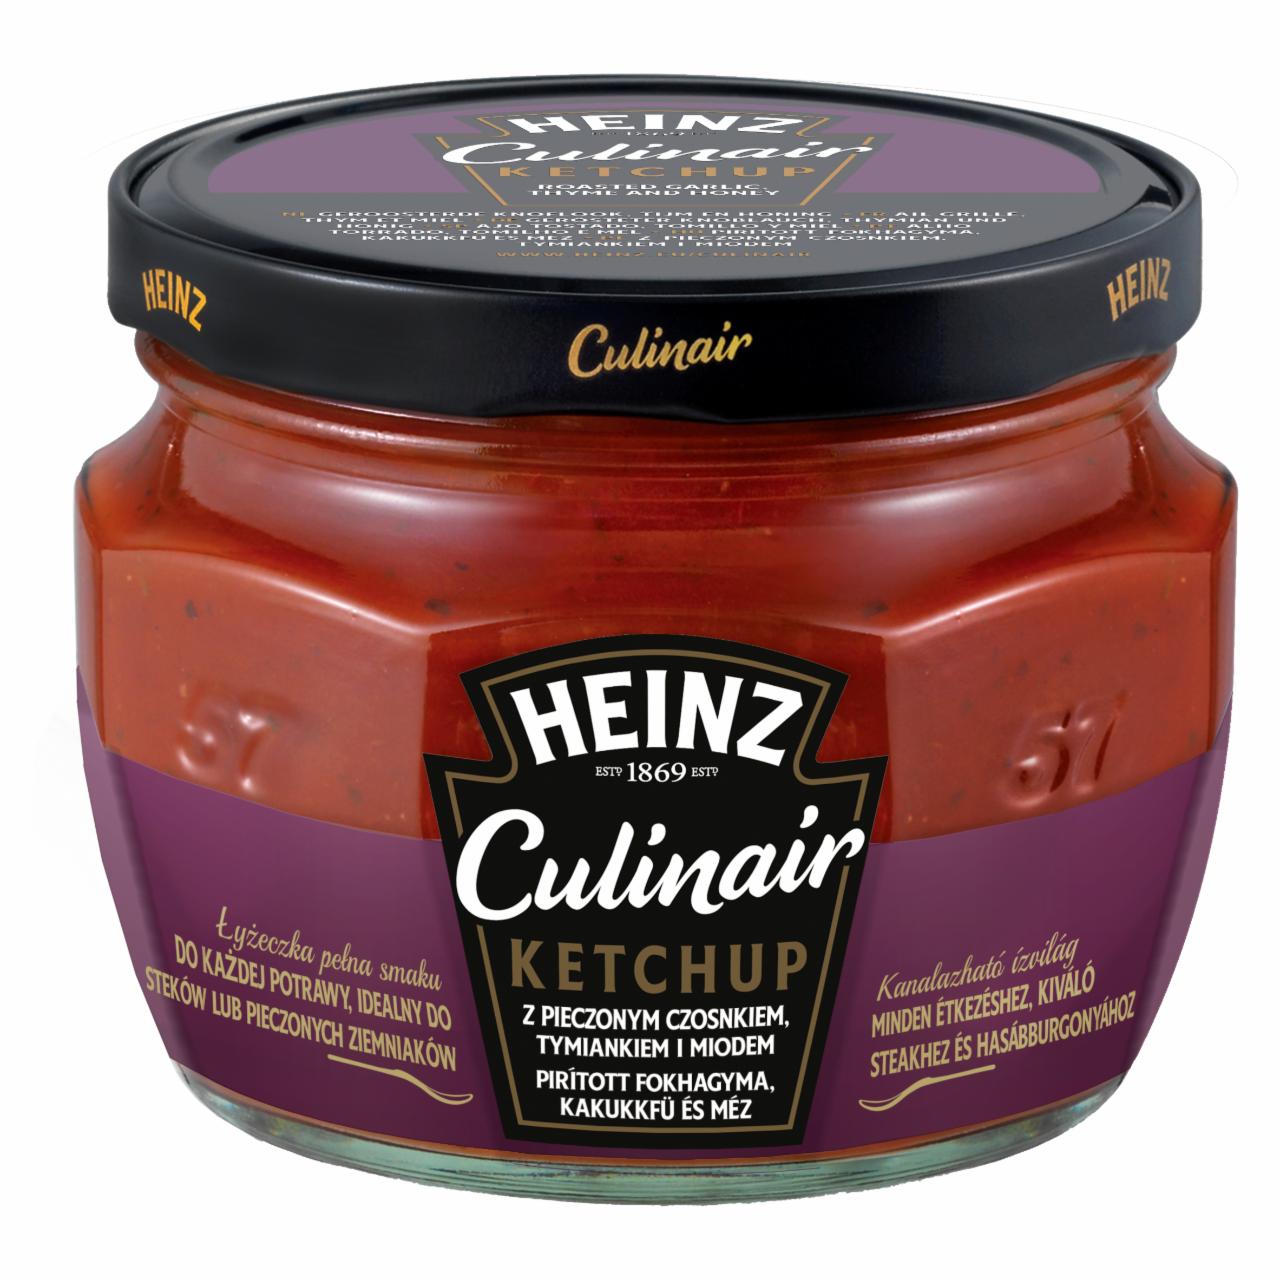 Zdjęcia - Heinz Culinair Ketchup z pieczonym czosnkiem tymiankiem i miodem 300 g